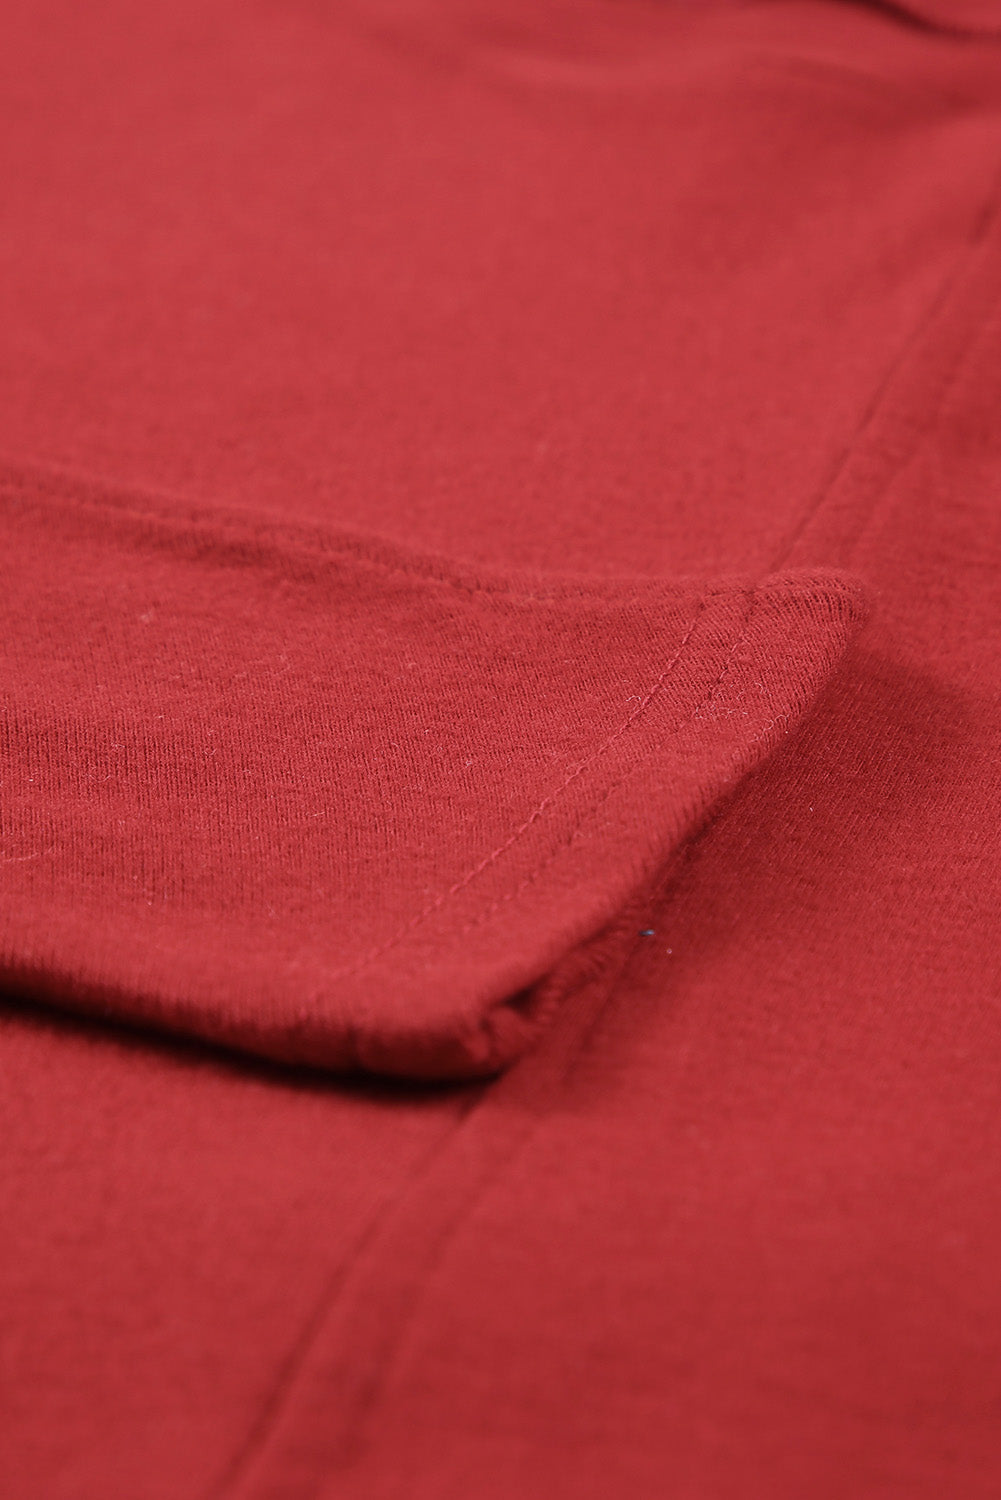 Smeđa vatrena majica dugih rukava u jednobojnoj boji